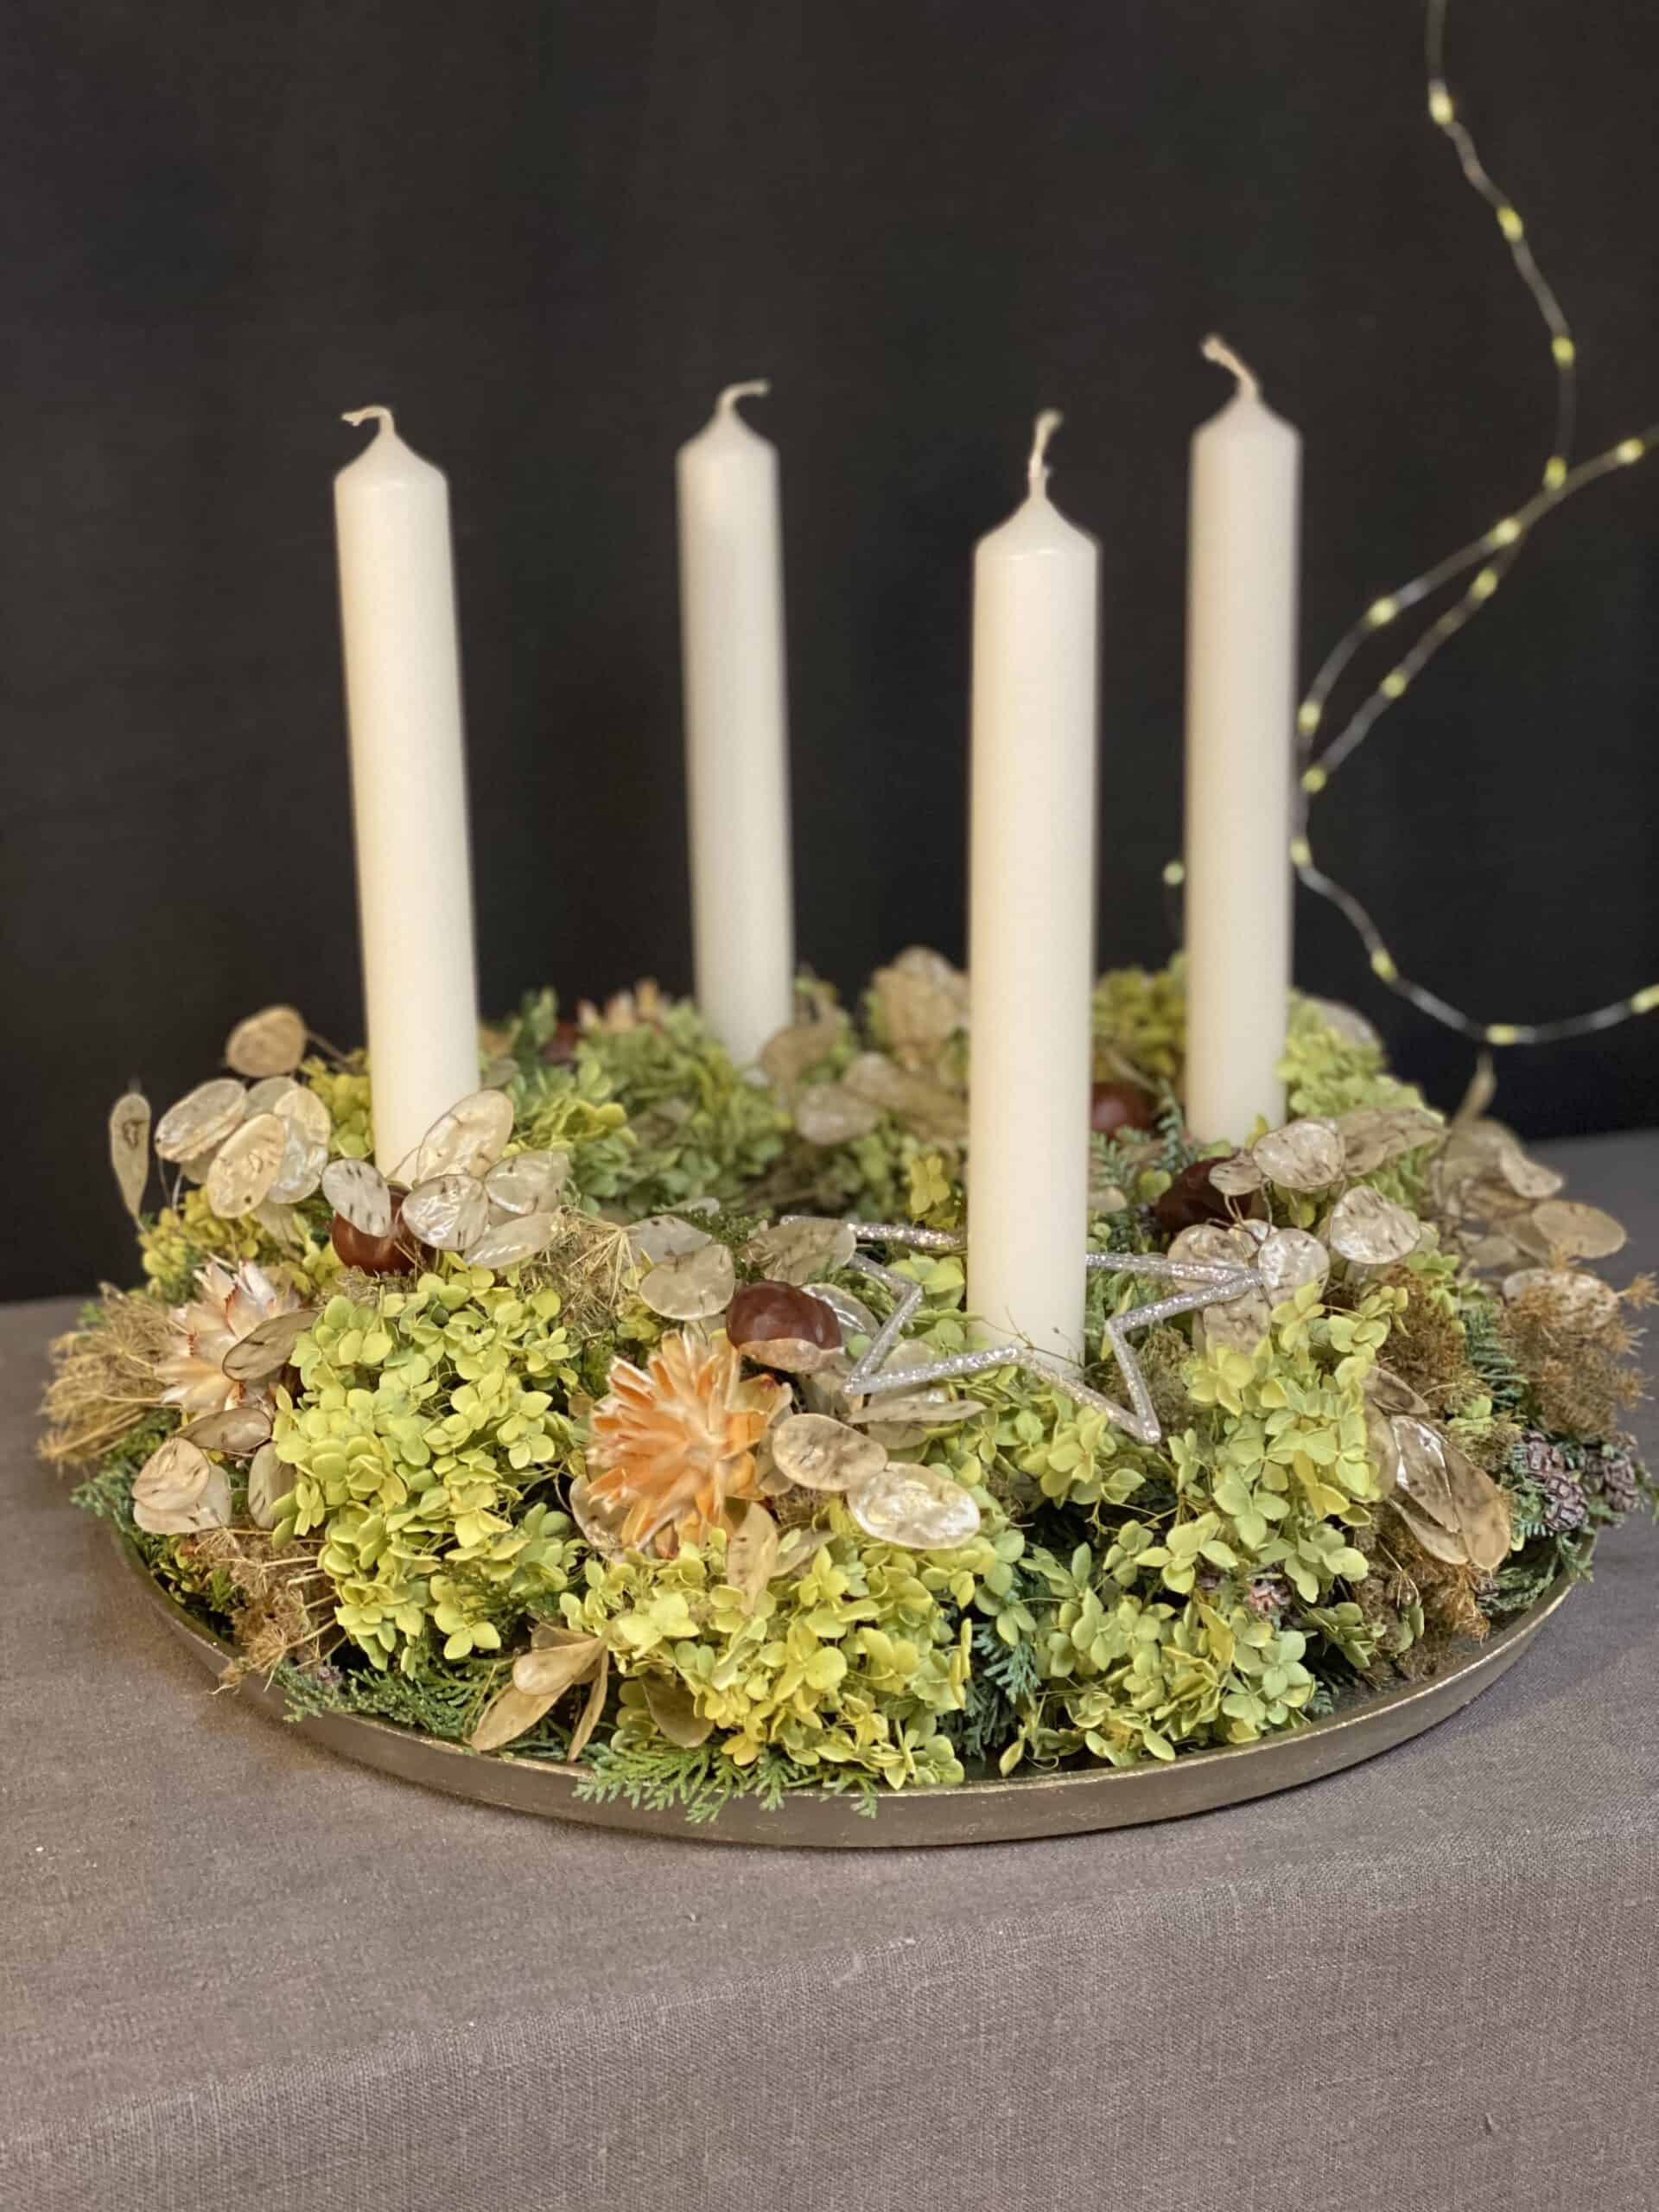 Advendskranz 2021 mit 4 weißen Kerzen, Hortensien, Trockenblumen